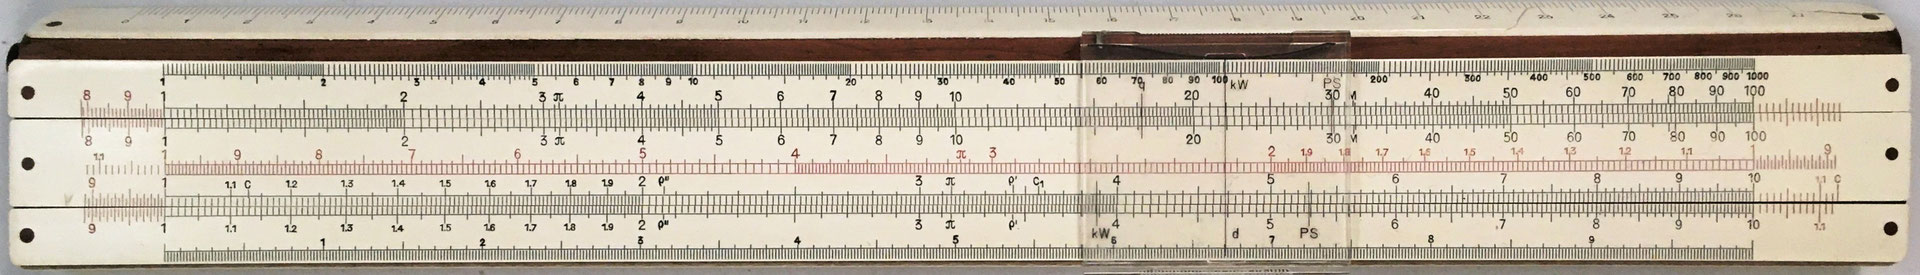 Regla de cálculo combinada FABER-CASTELL 1/87A con ADDIATOR (variante 2), año 1952, 30x4.5 cm